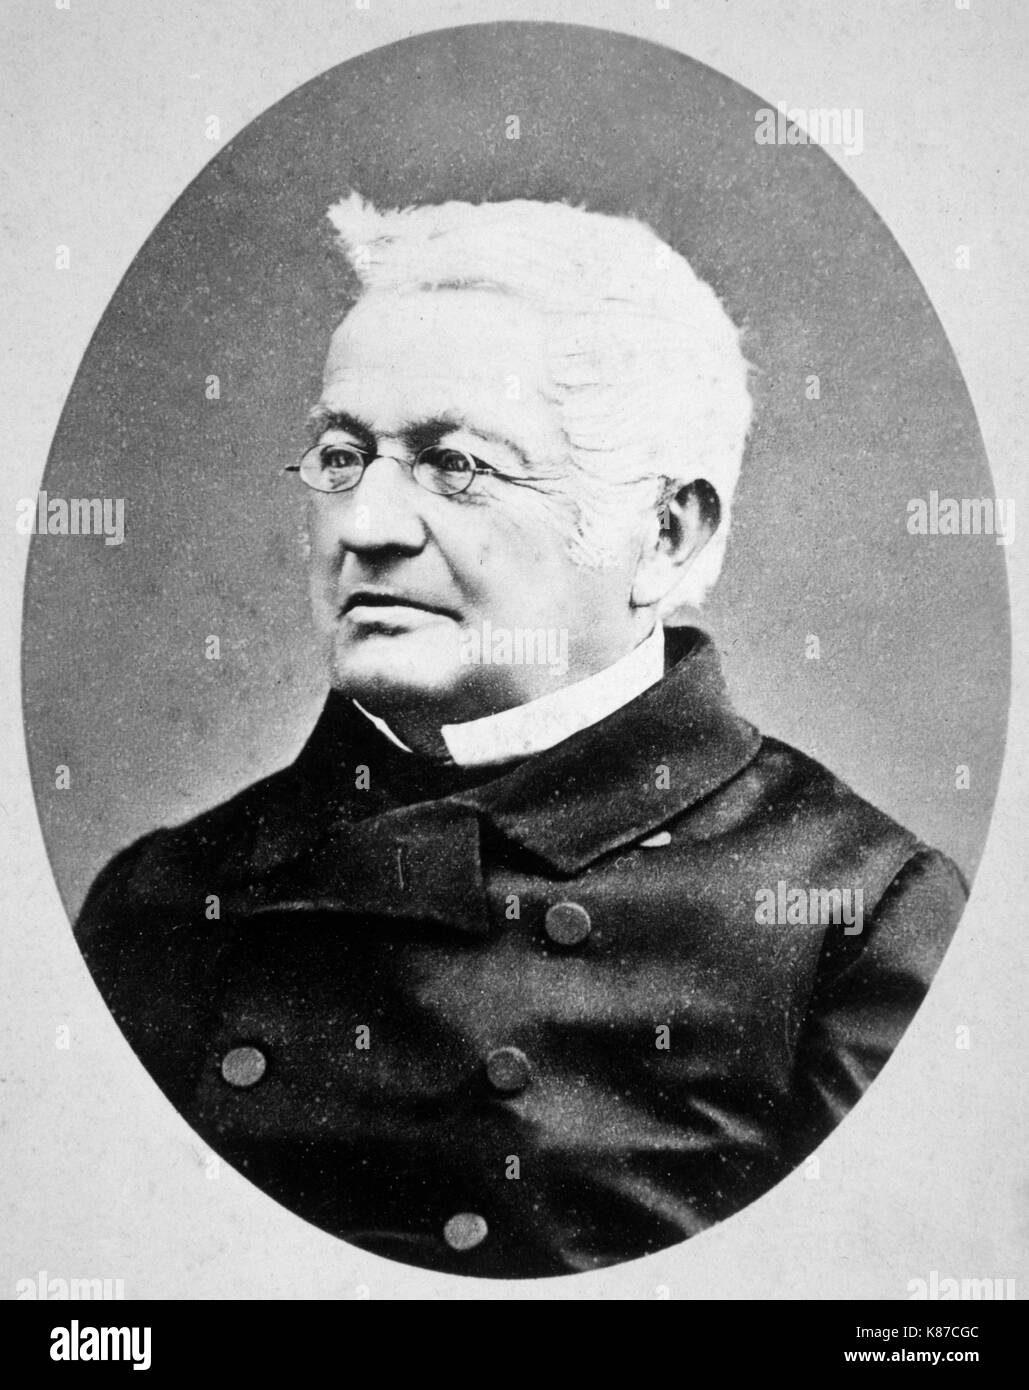 Ritratto di Adolphe Thiers , avvocato francese , giornalista , storico e statista. Il presidente della repubblica francese dal 1871 al 1873 Foto Stock